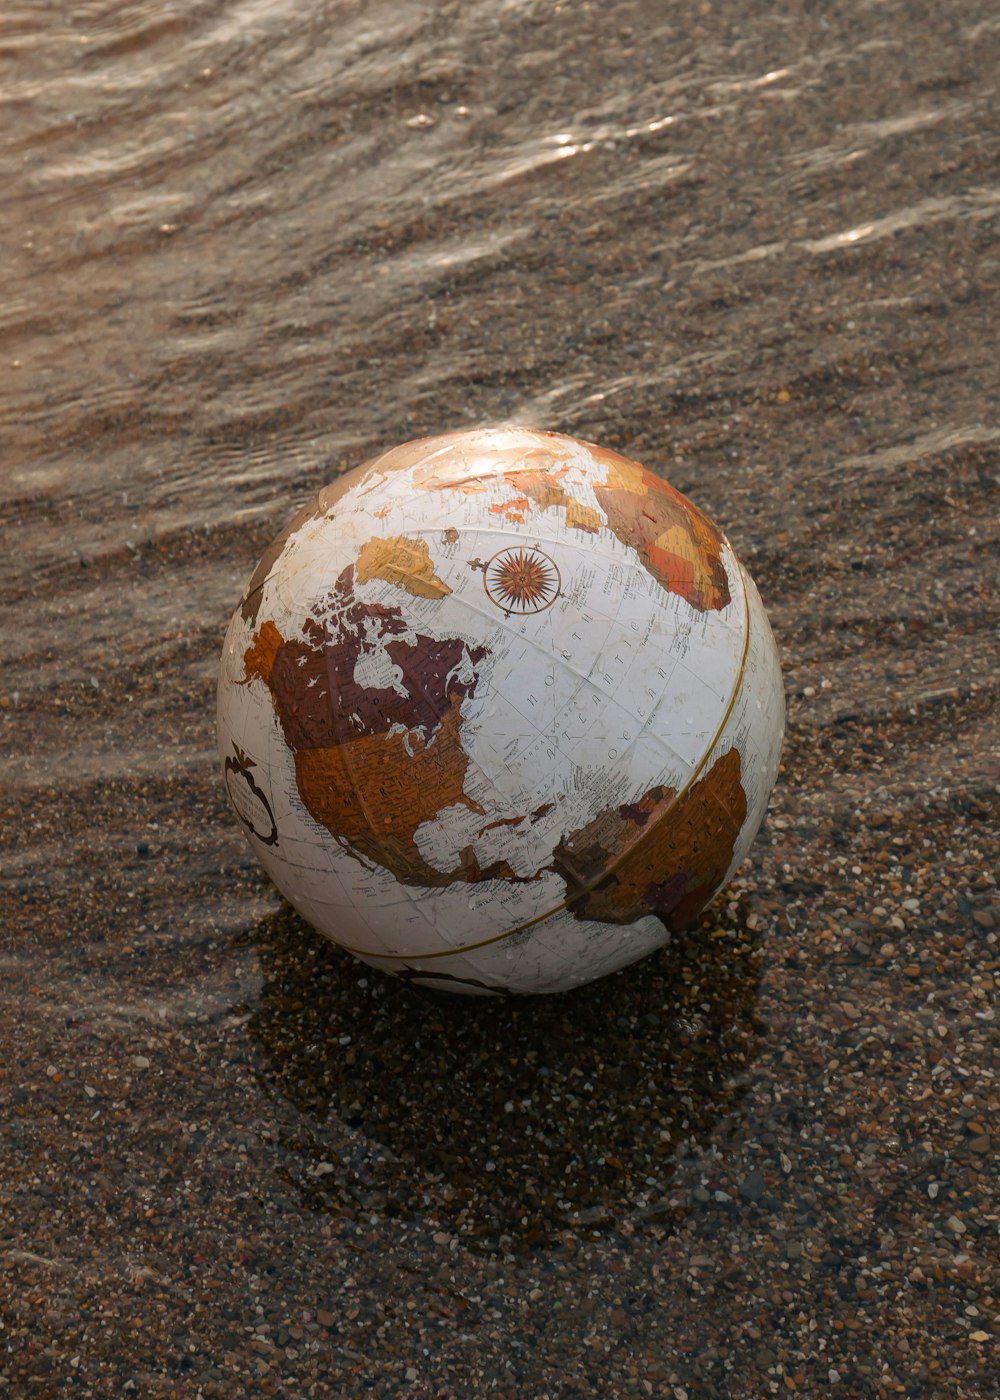 모래 위에 앉아있는 낡은 축구 공